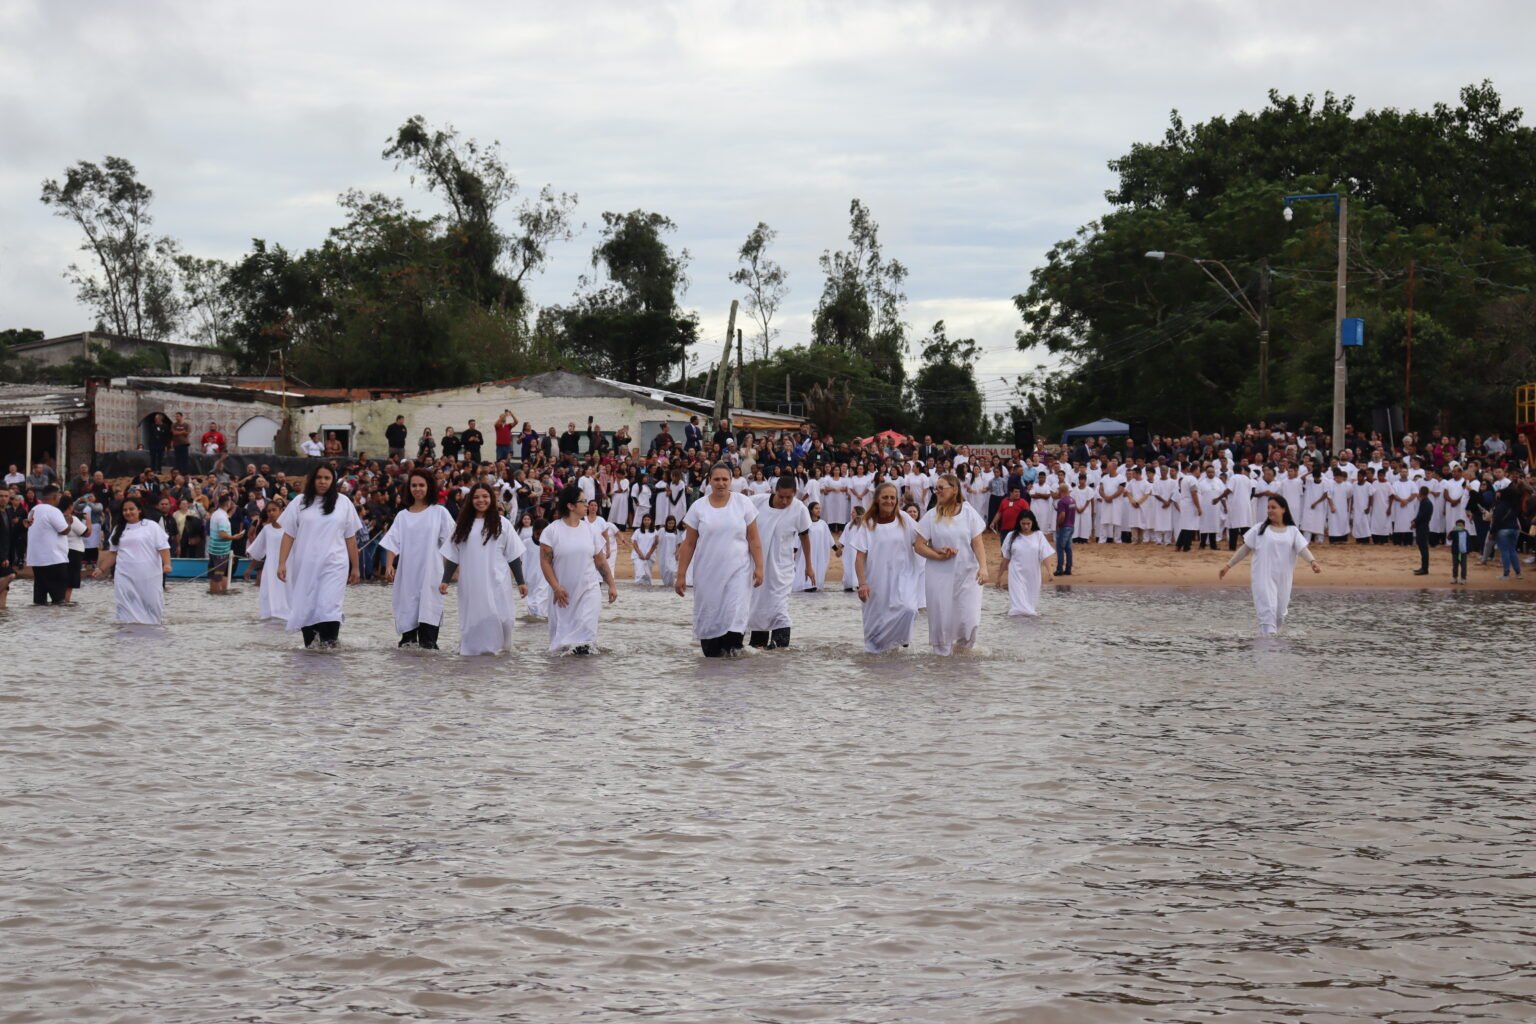 Igreja batiza mais de 3 mil pessoas no RS: “A grande missão é fazer discípulos”